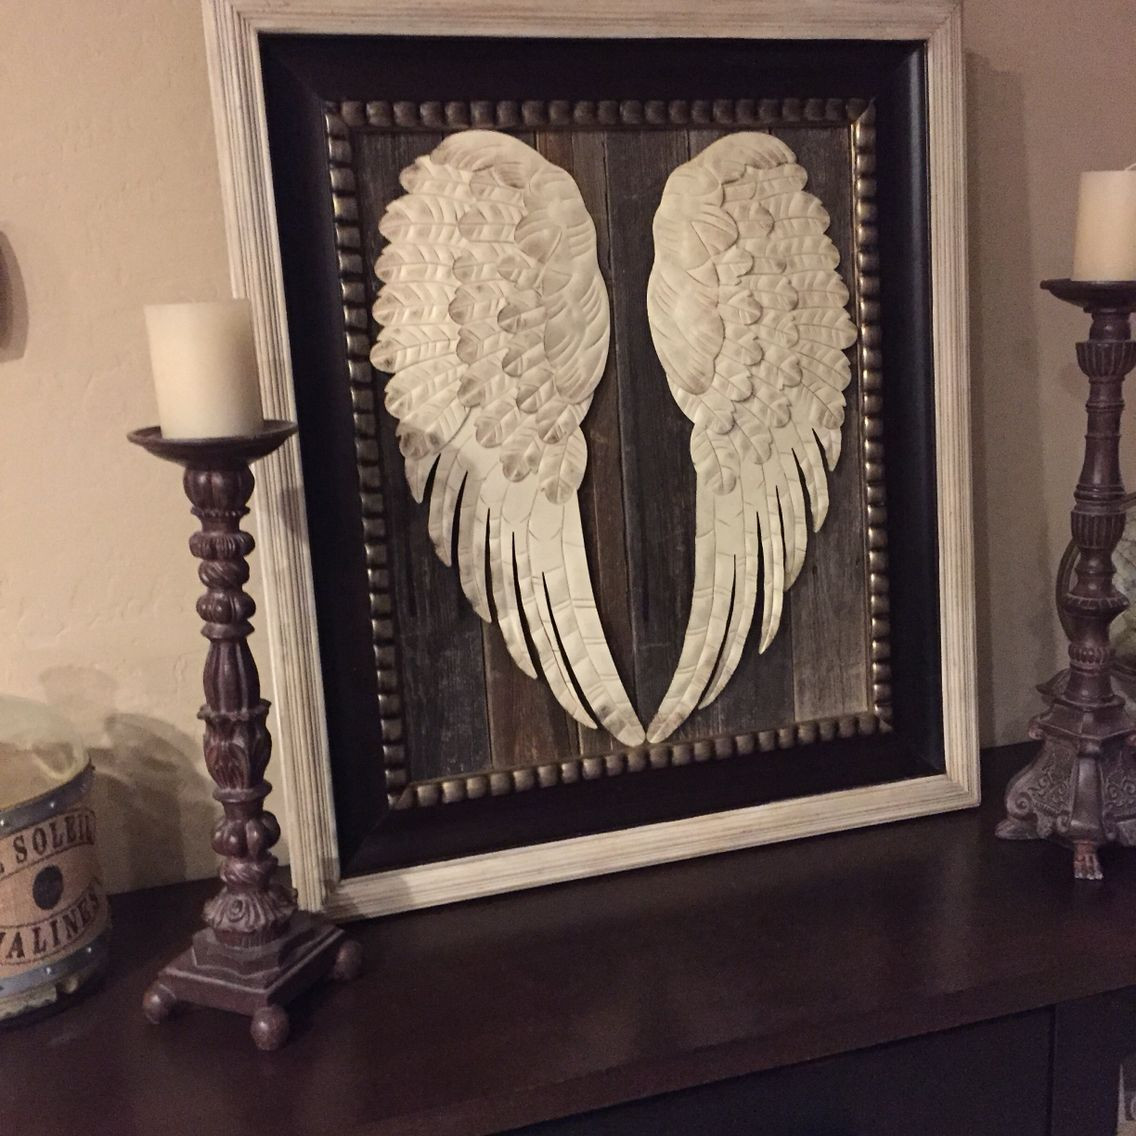 DIY Angel Wings Wall Decor
 Pin by Shelly Nemeth on Angel wings